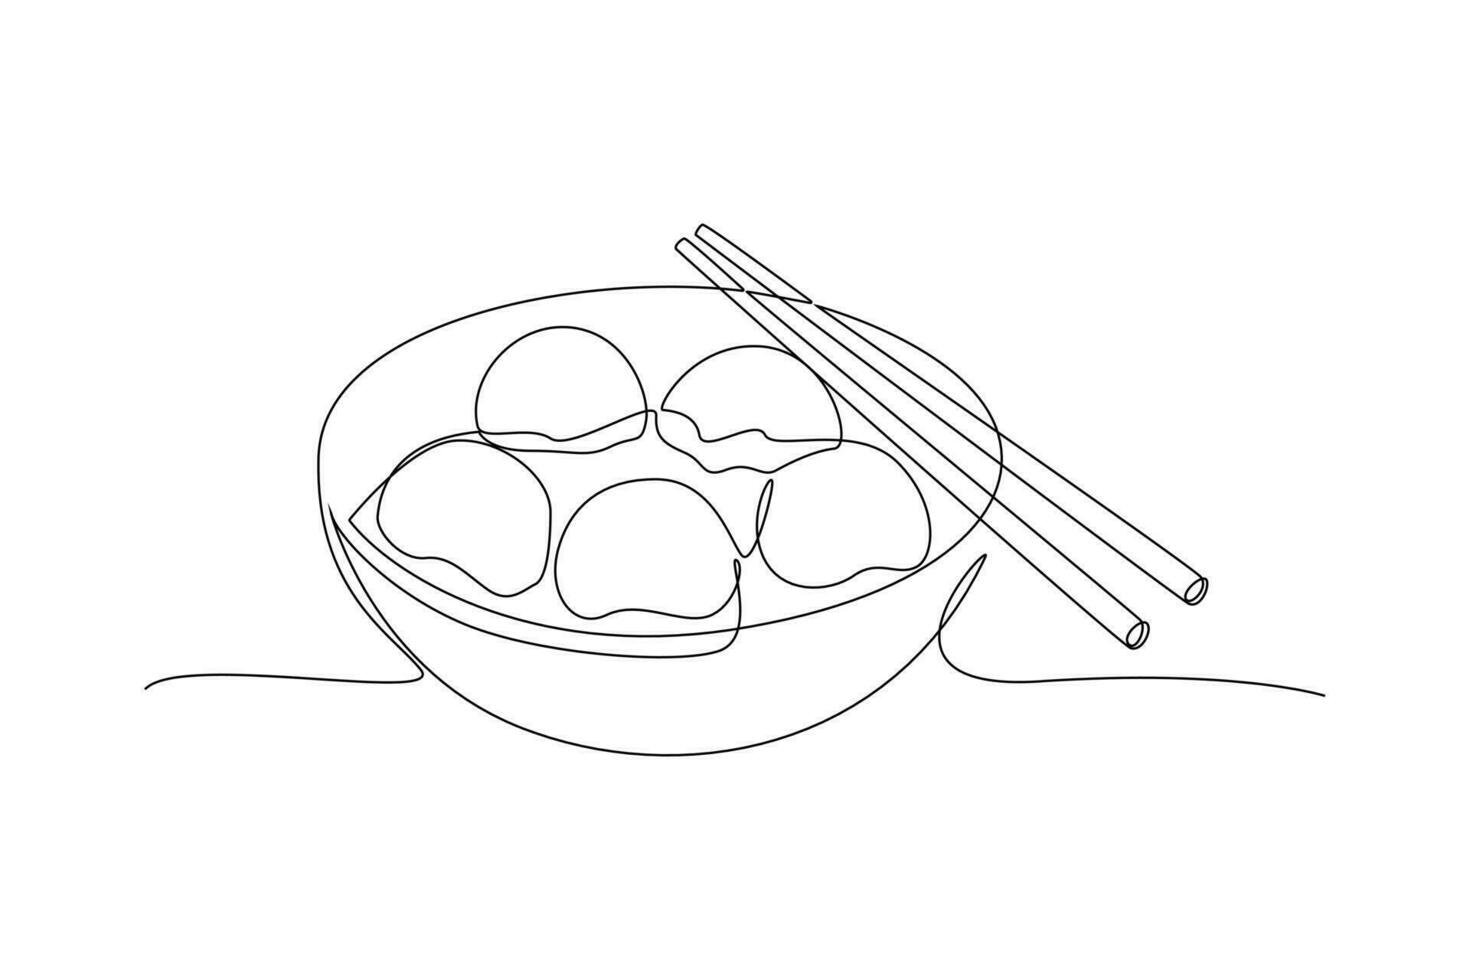 doorlopend een lijn tekening dongzhi festival concept. tekening vector illustratie.